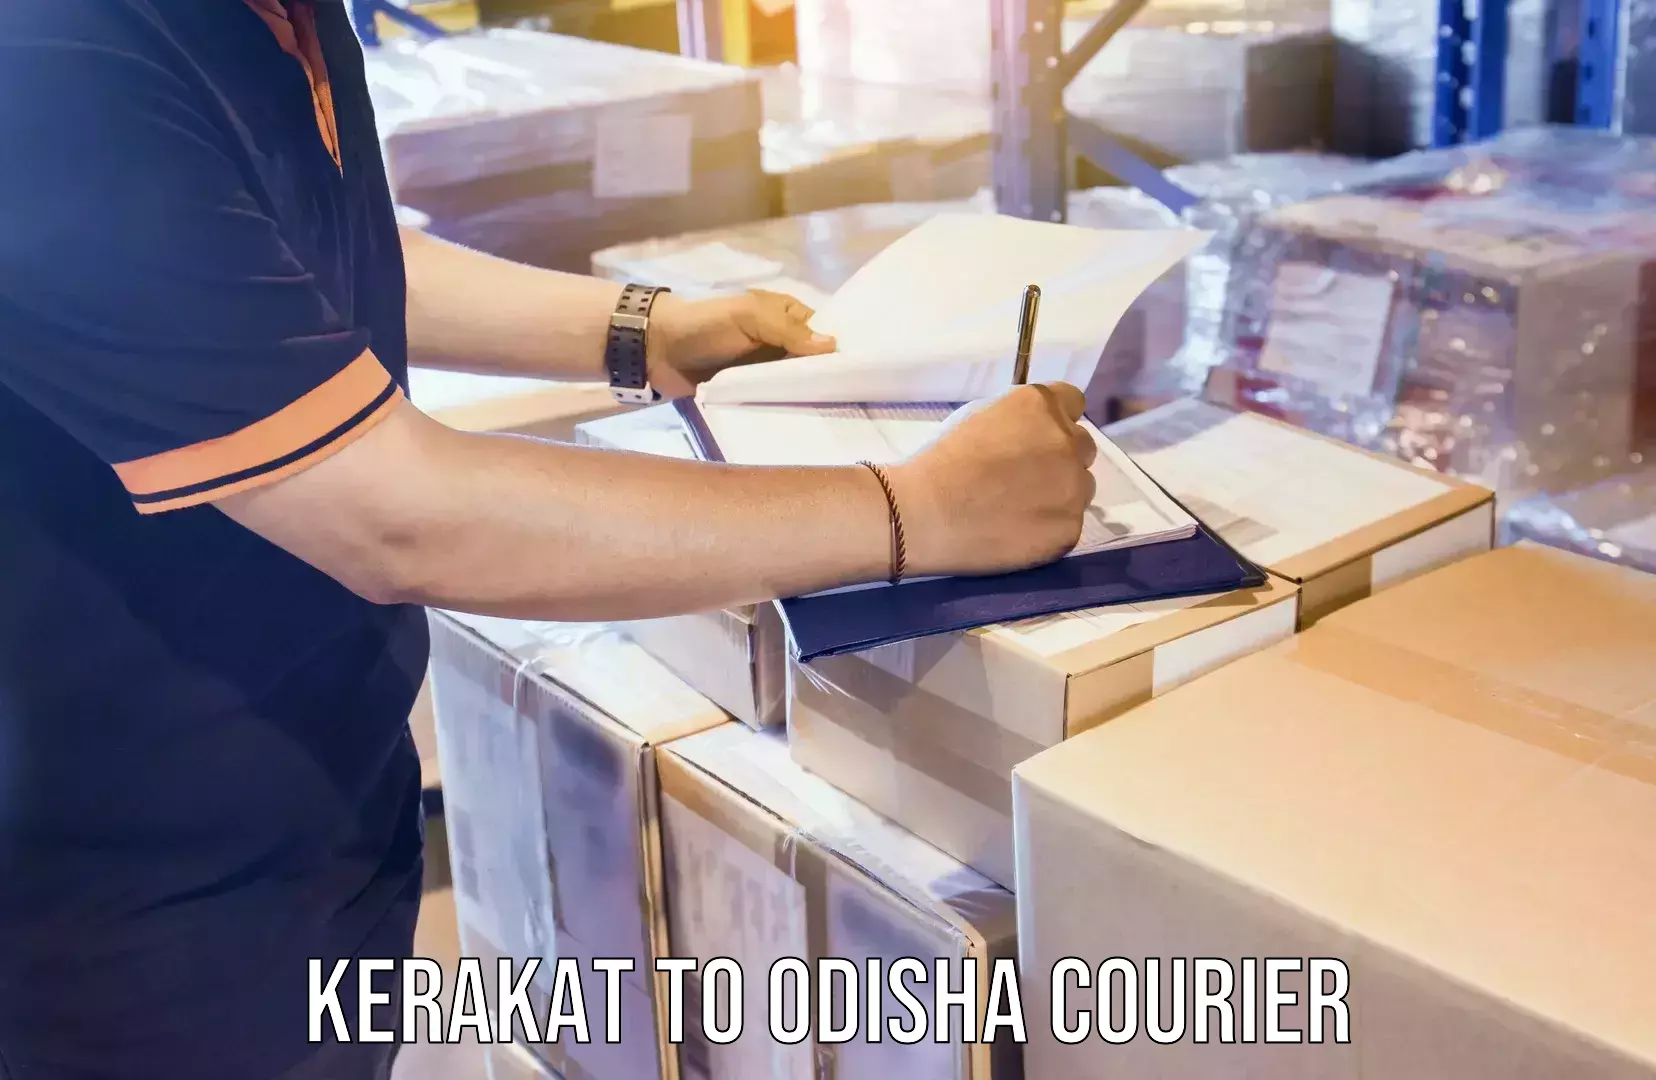 Trusted moving company Kerakat to Odisha